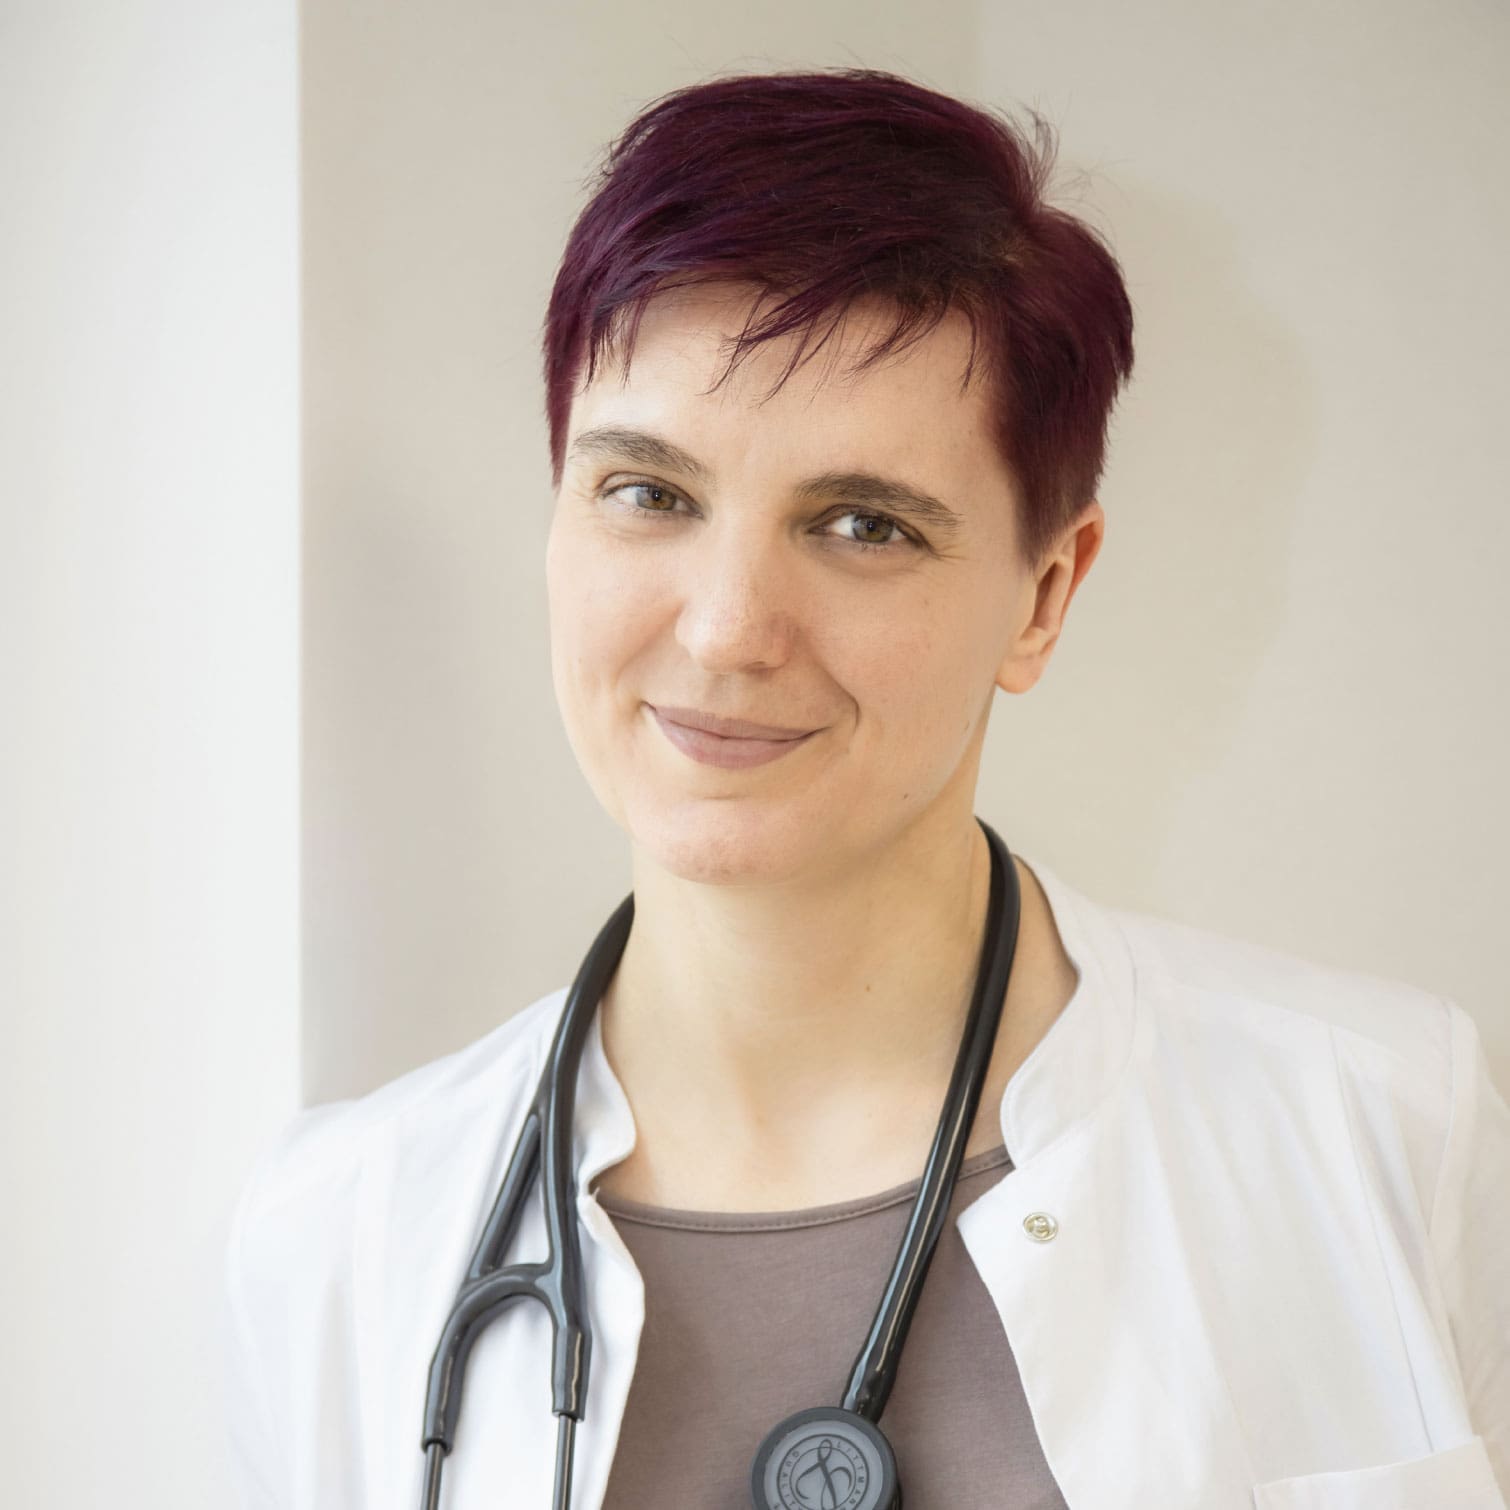 Dr. Dissauer, eine Dame mit rötlich gefärbten, kurzen Haaren, blickt im Arztkittel und Stethoskop um den Hals lächelnd in die Kamera